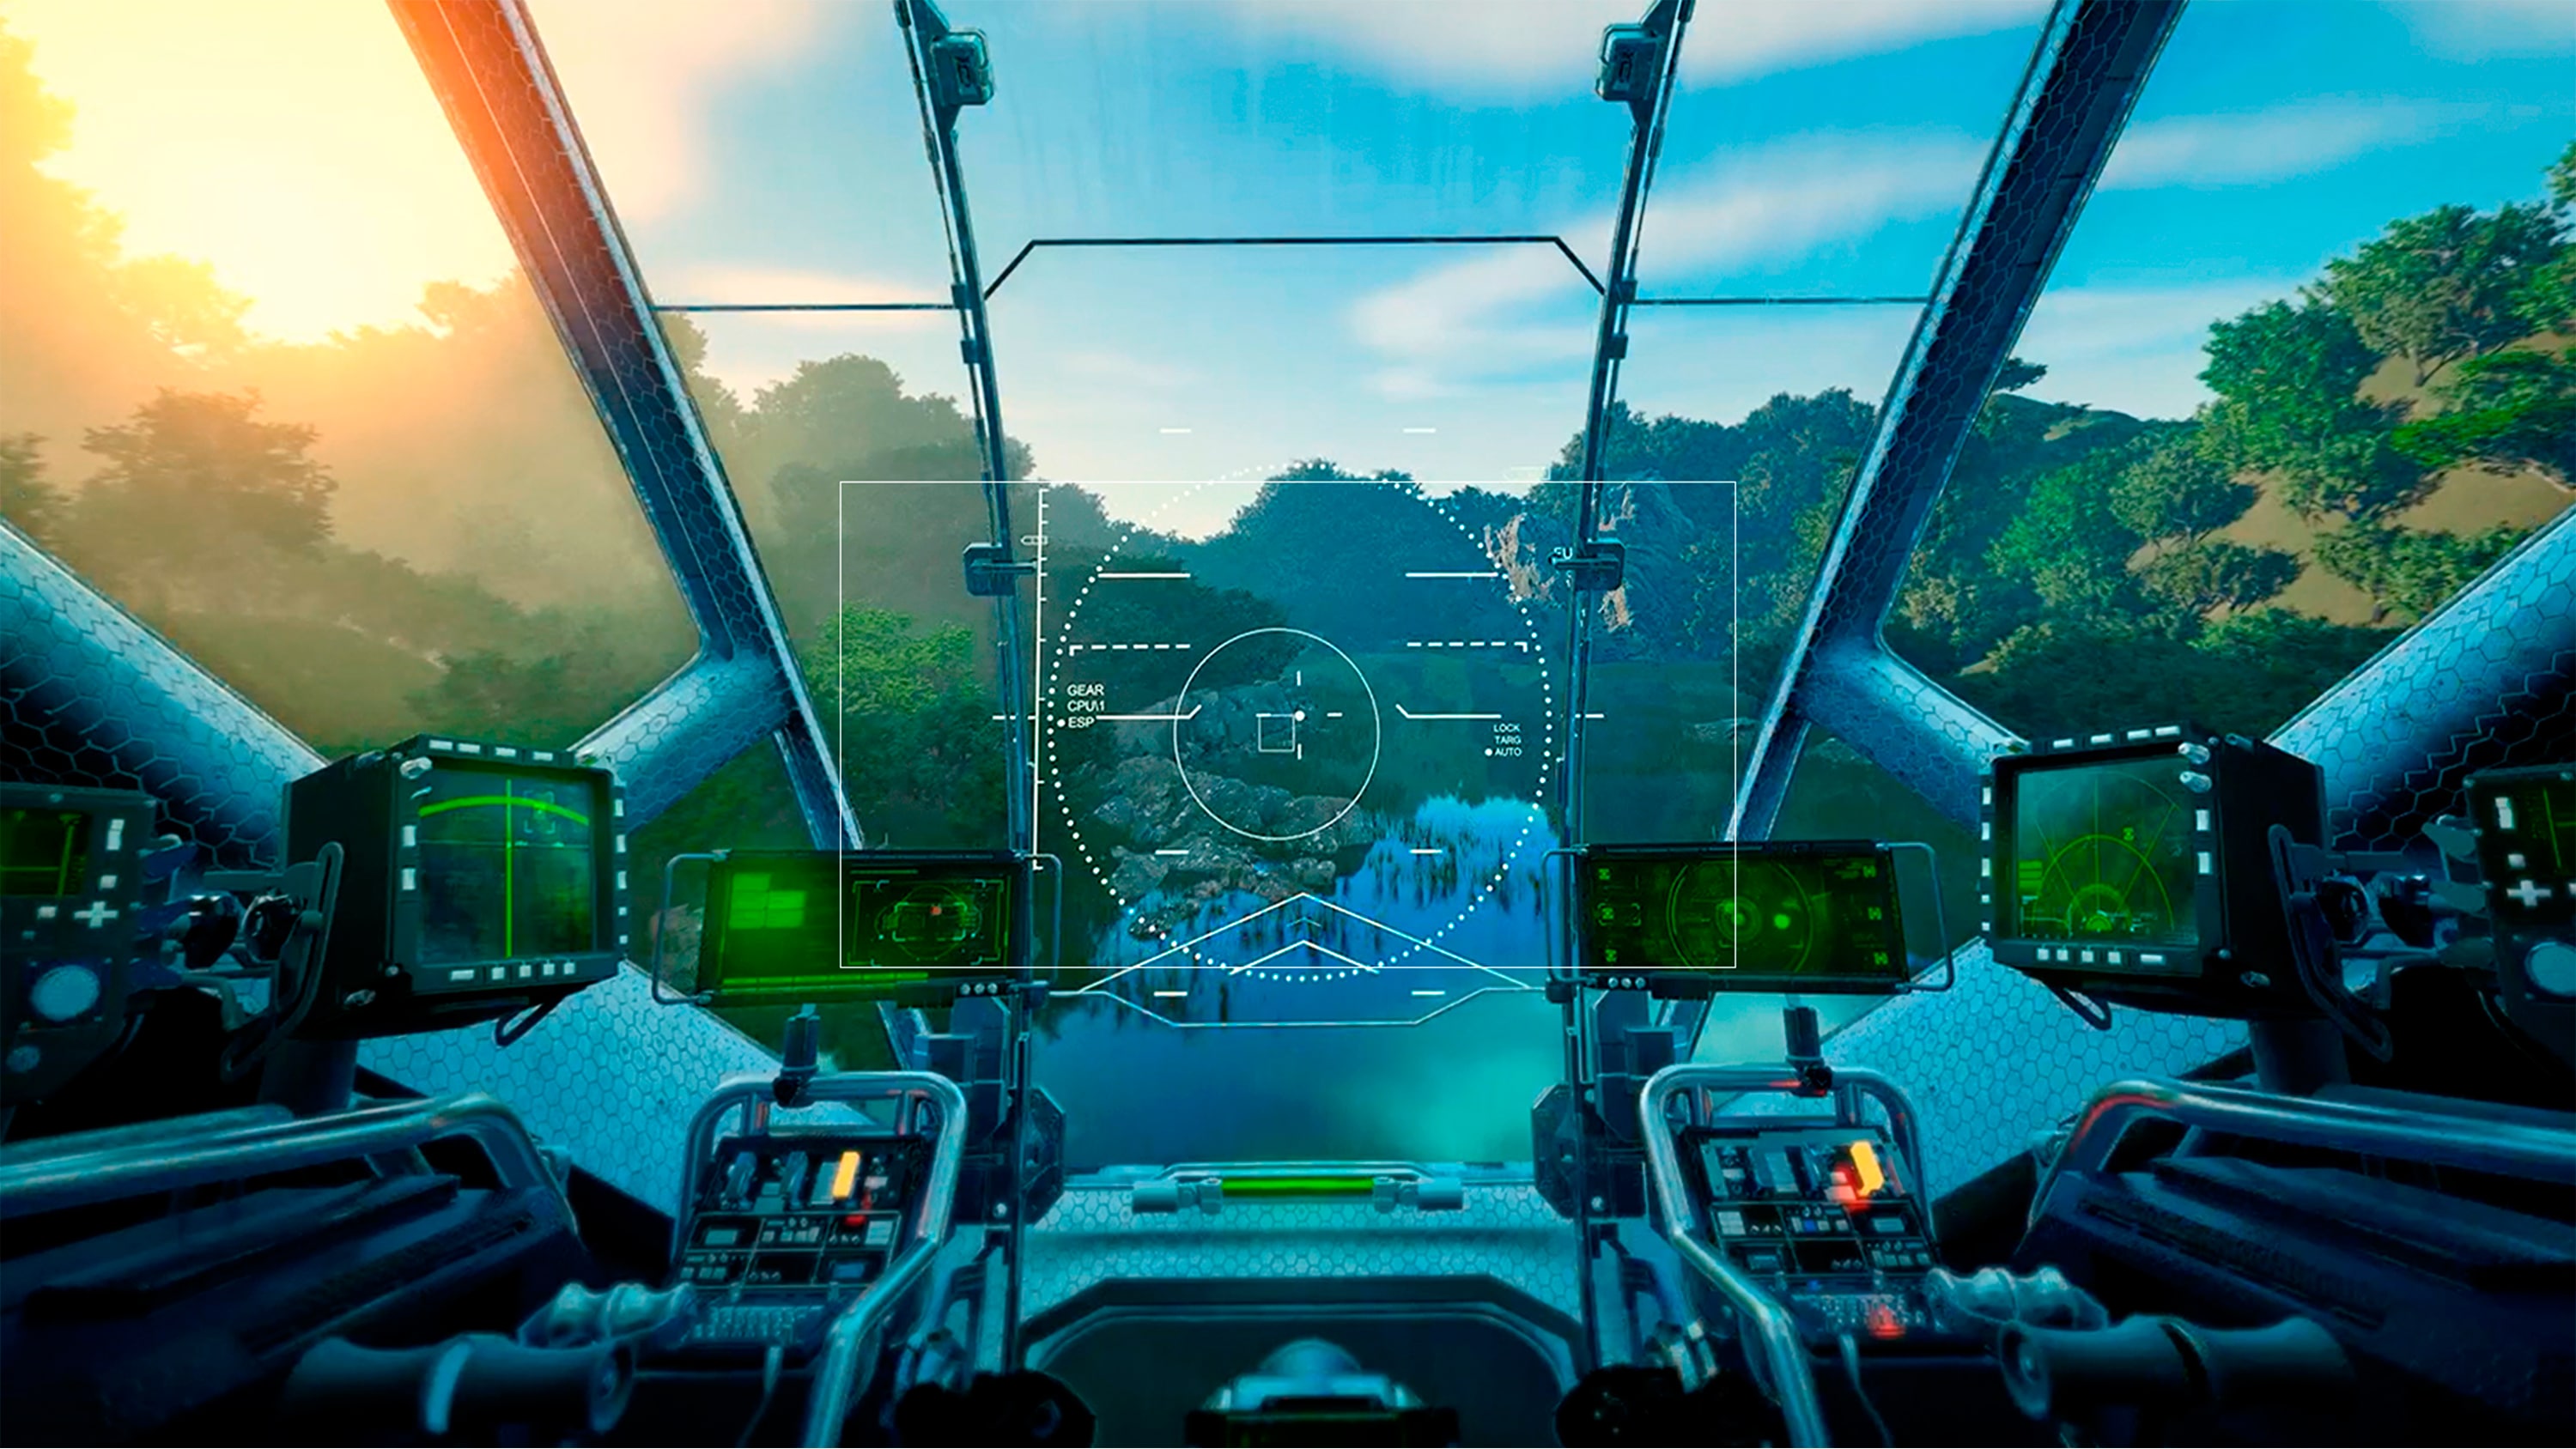 Bild aus einem Spiel, auf dem Flugzeugbedienelemente abgebildet sind.